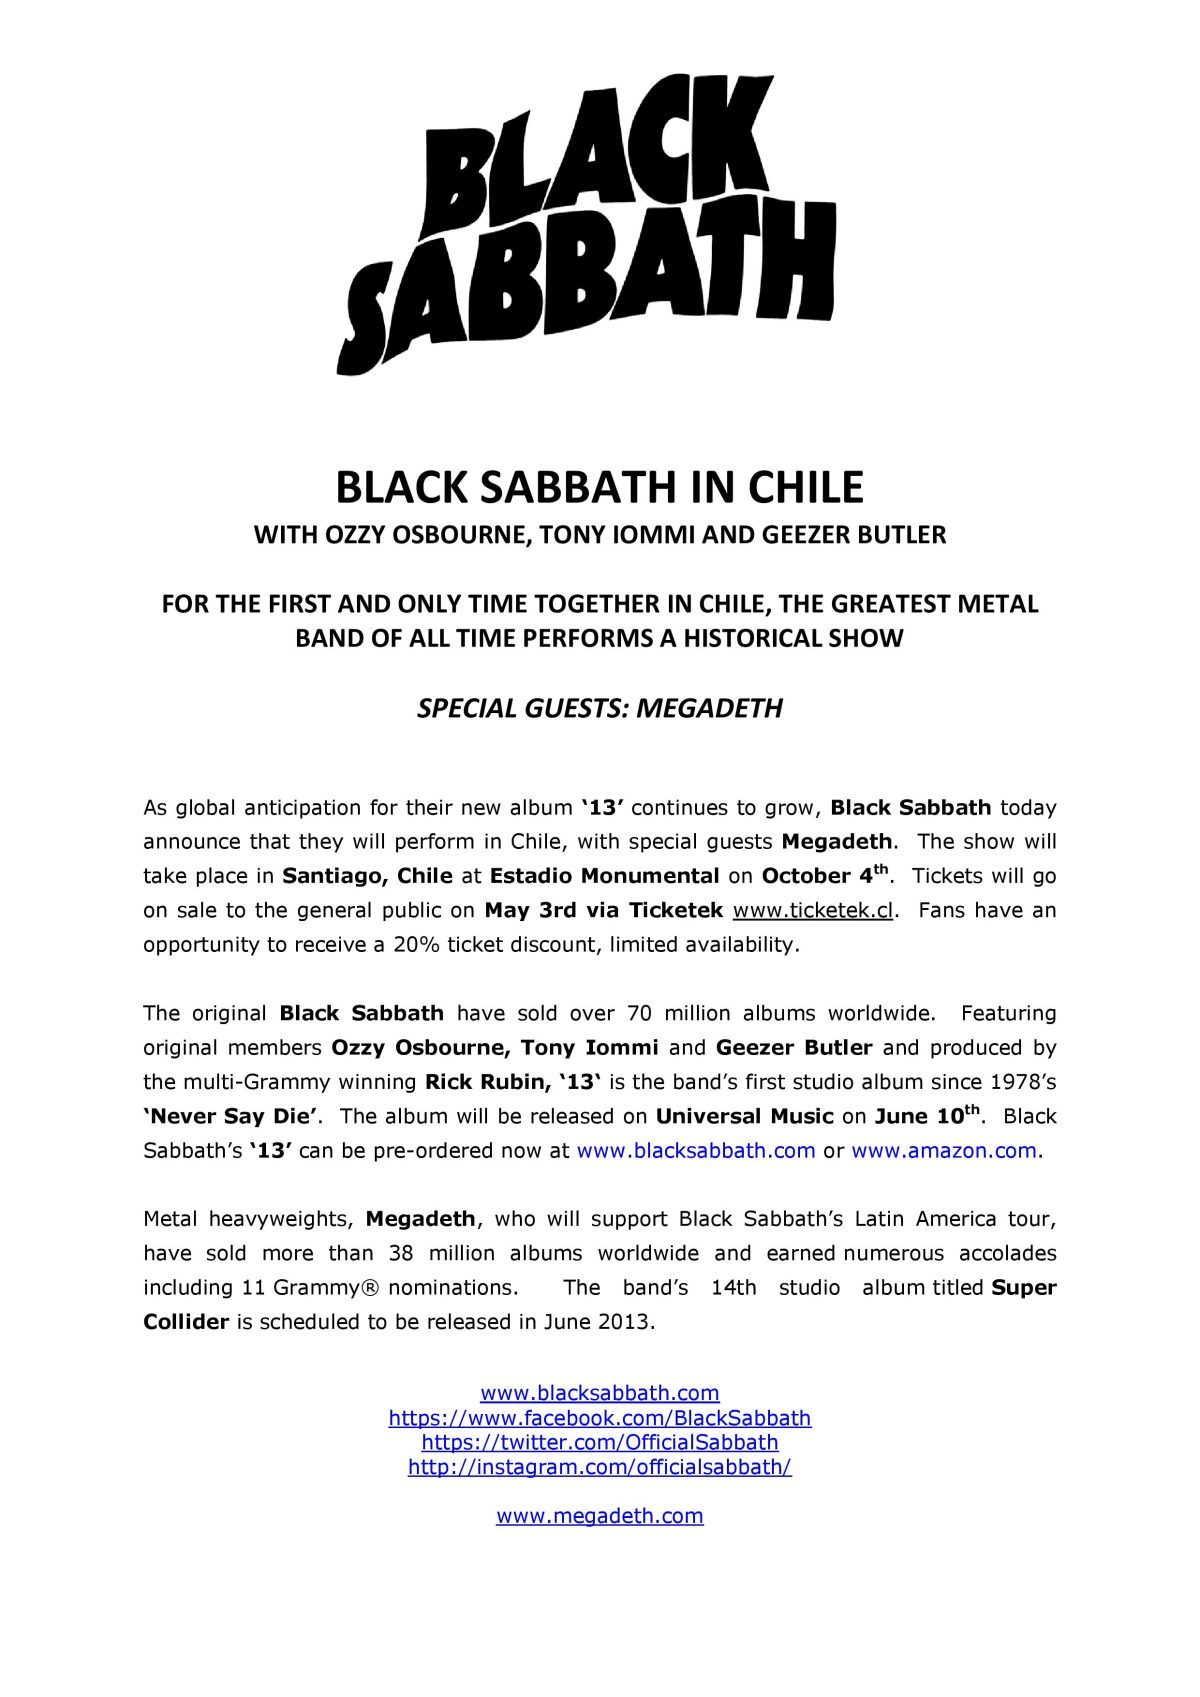 Black Sabbath - Chile Release 4.26.13-page-001